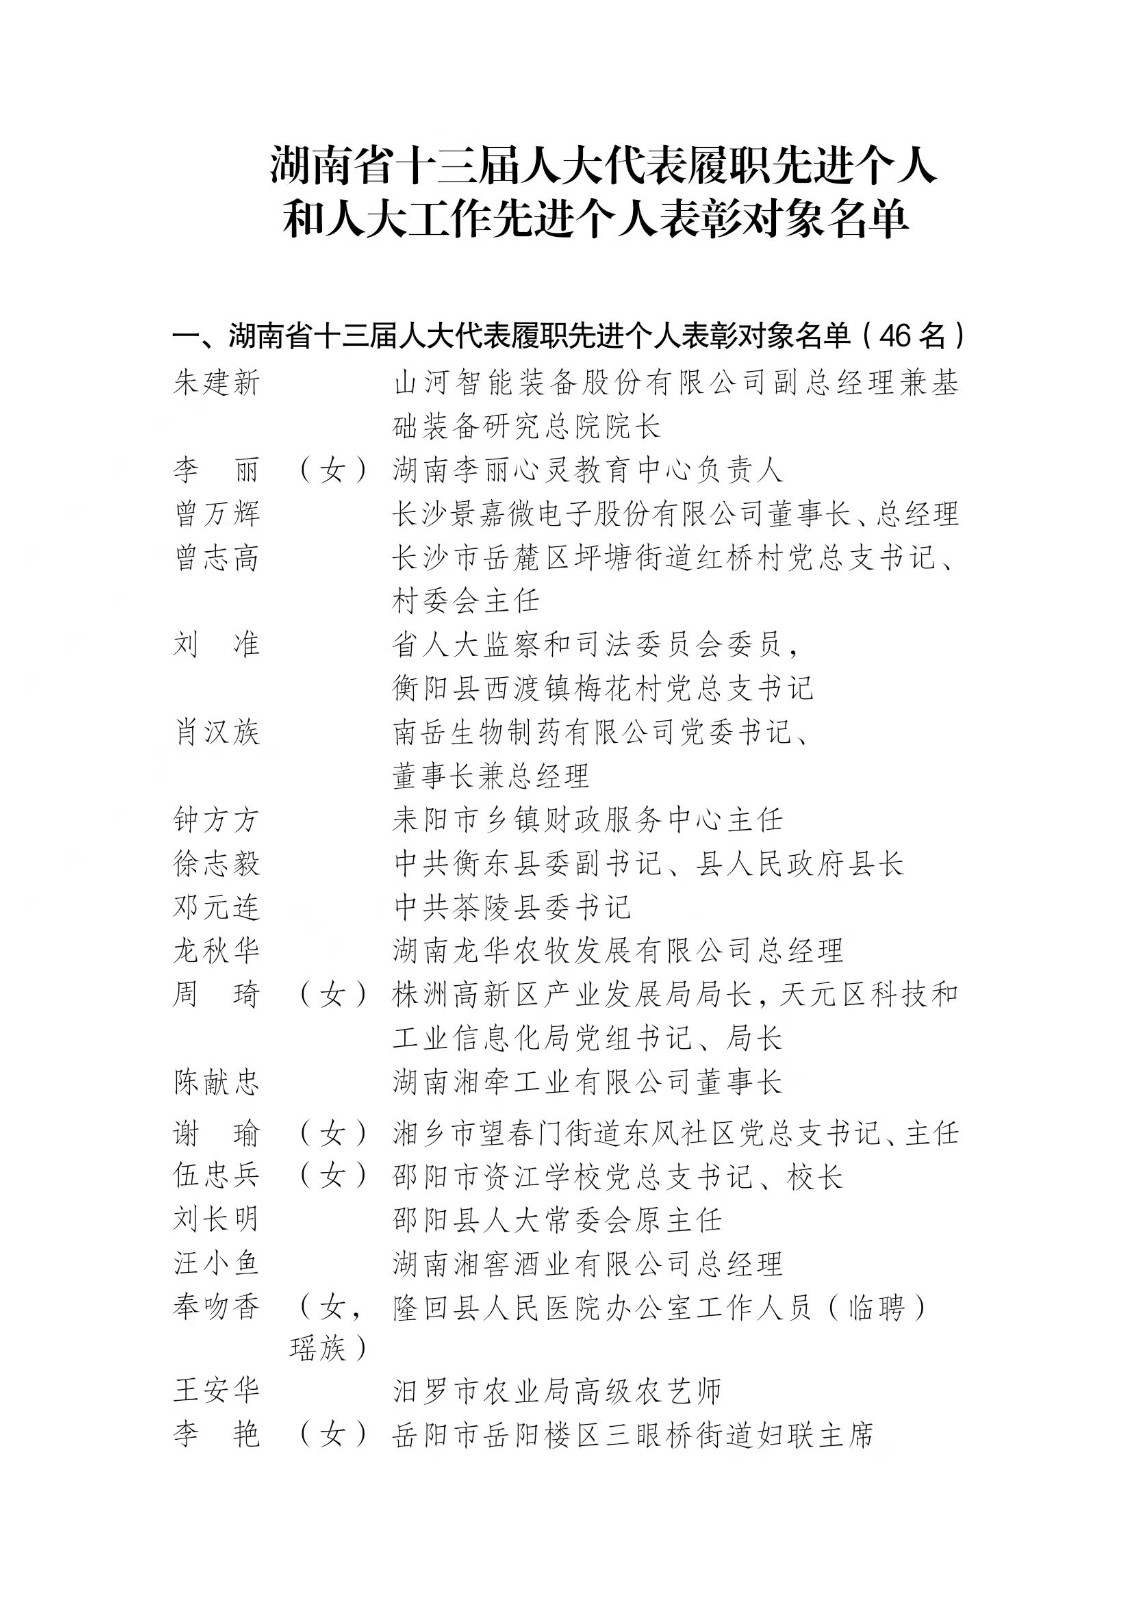 名单公示！湖南拟表彰98名省人大代表和人大工作者